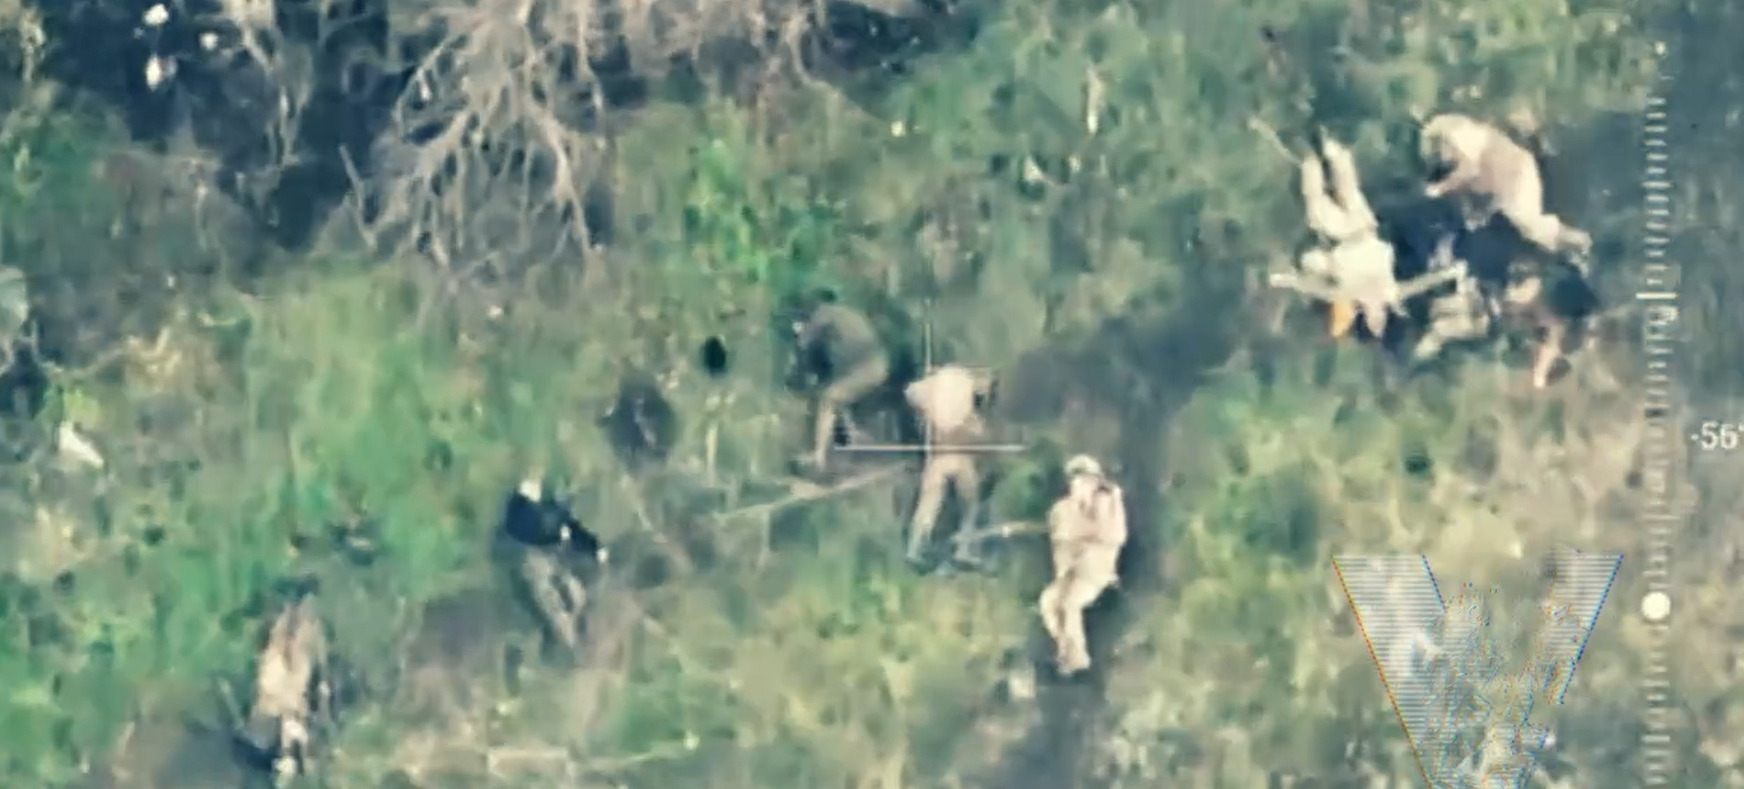 Видео снятое хохлами. Убитые российские солдаты.